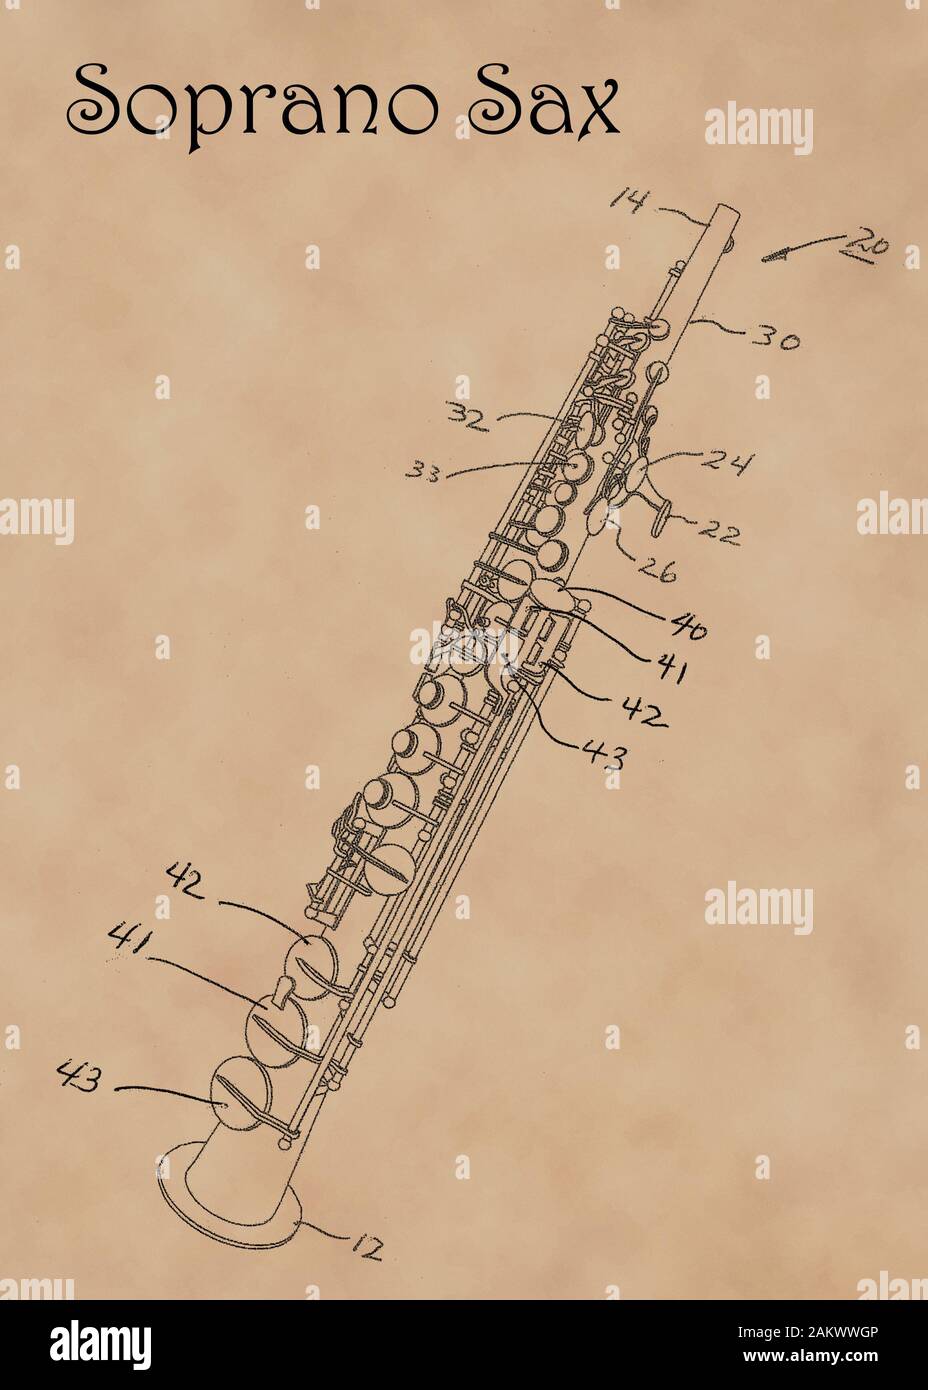 Us-Patent Diagramm für Sopran Saxophon Musikinstrument auf verblasste Pergamentpapier. Stockfoto